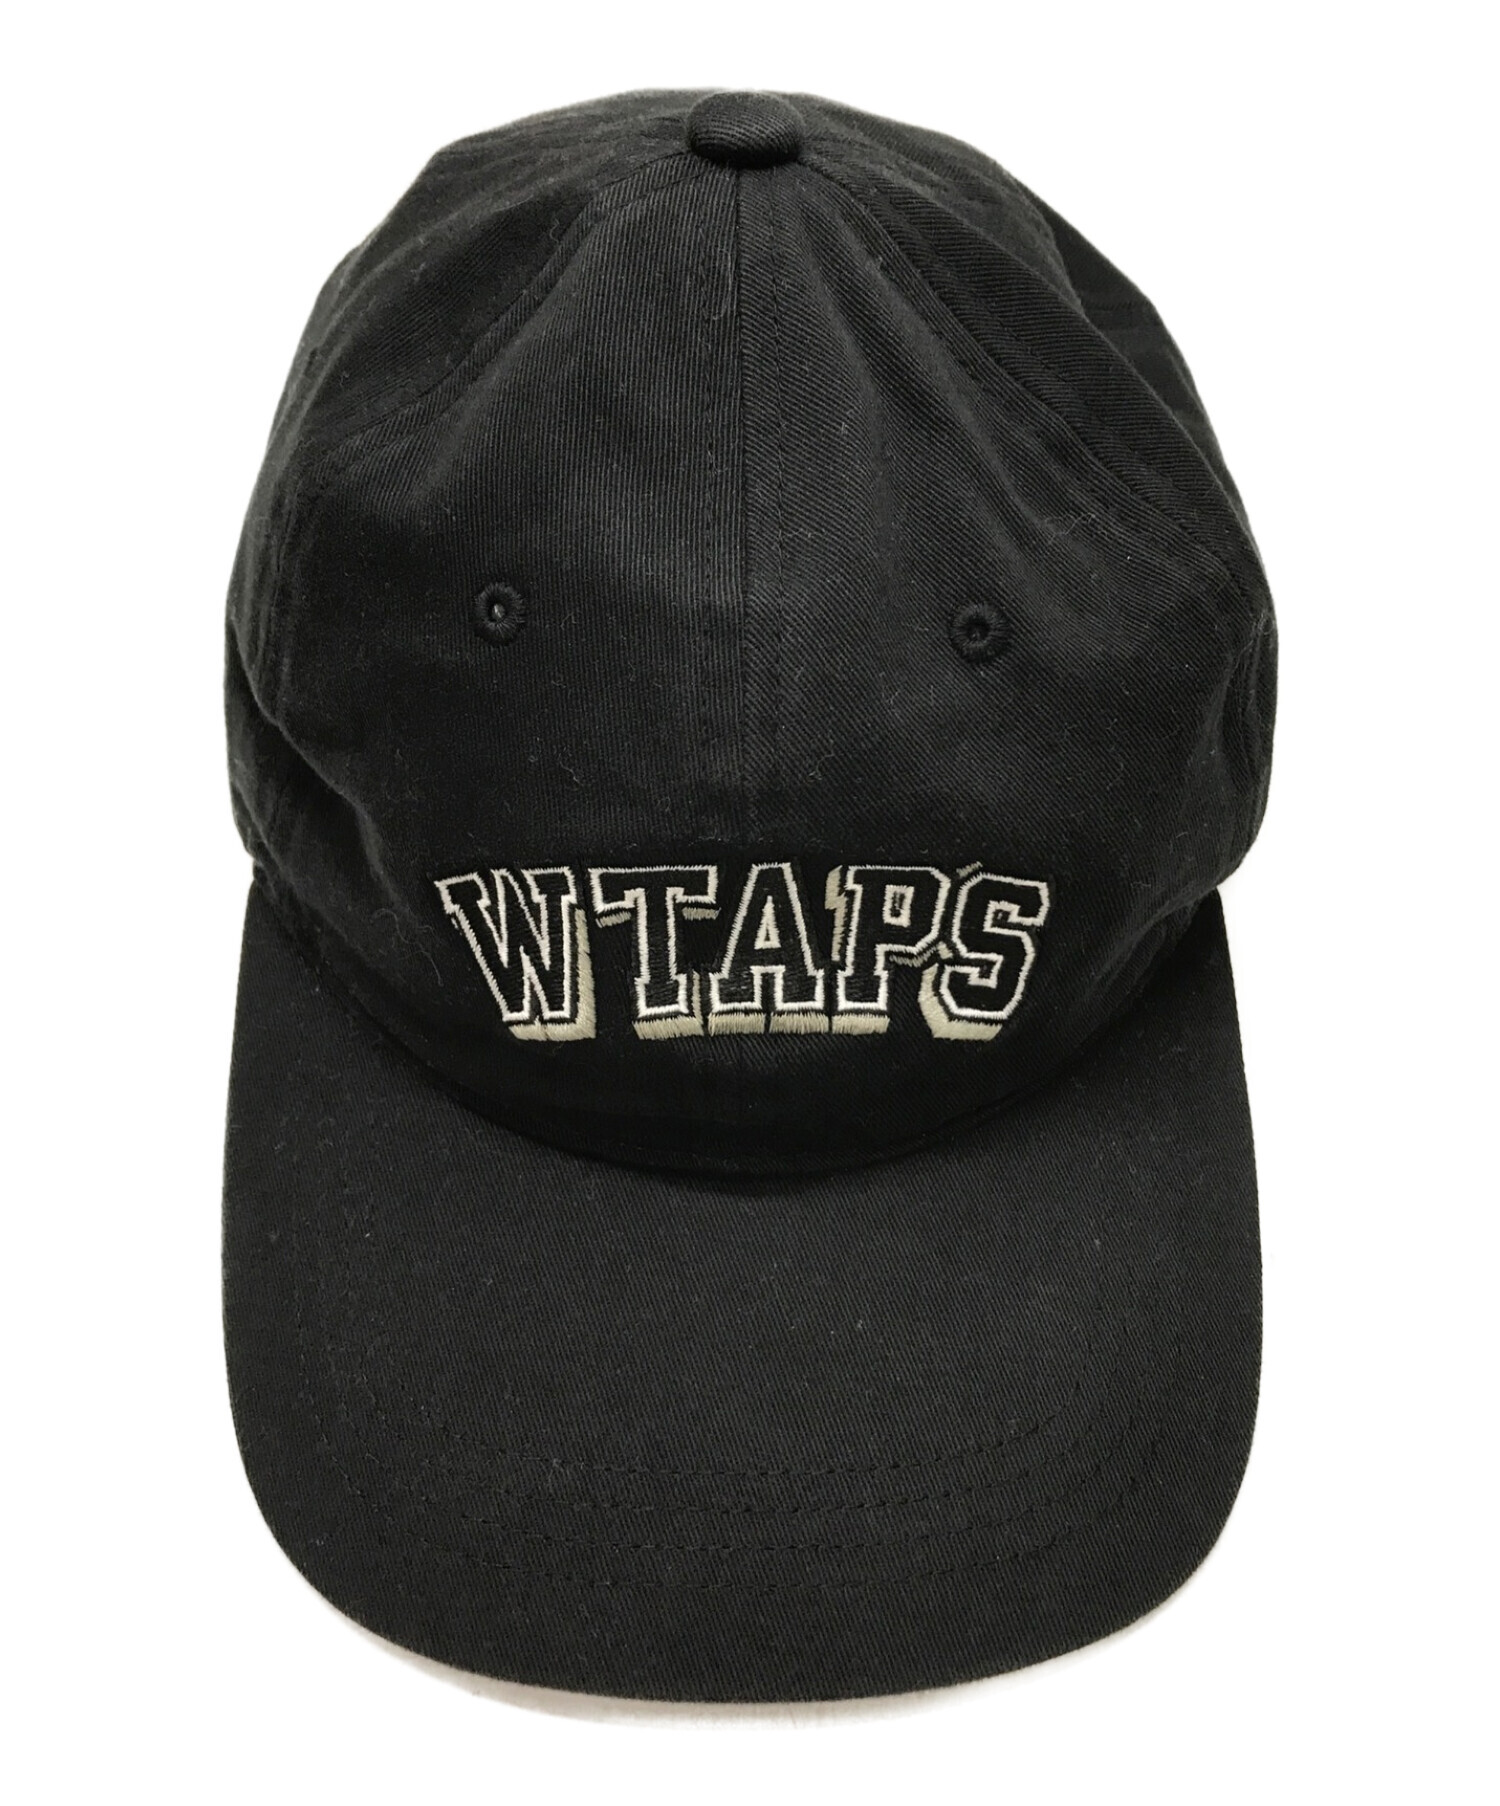 WTAPS (ダブルタップス) 20SS COTTON TWILL CAP キャップ ブラック サイズ:X 00